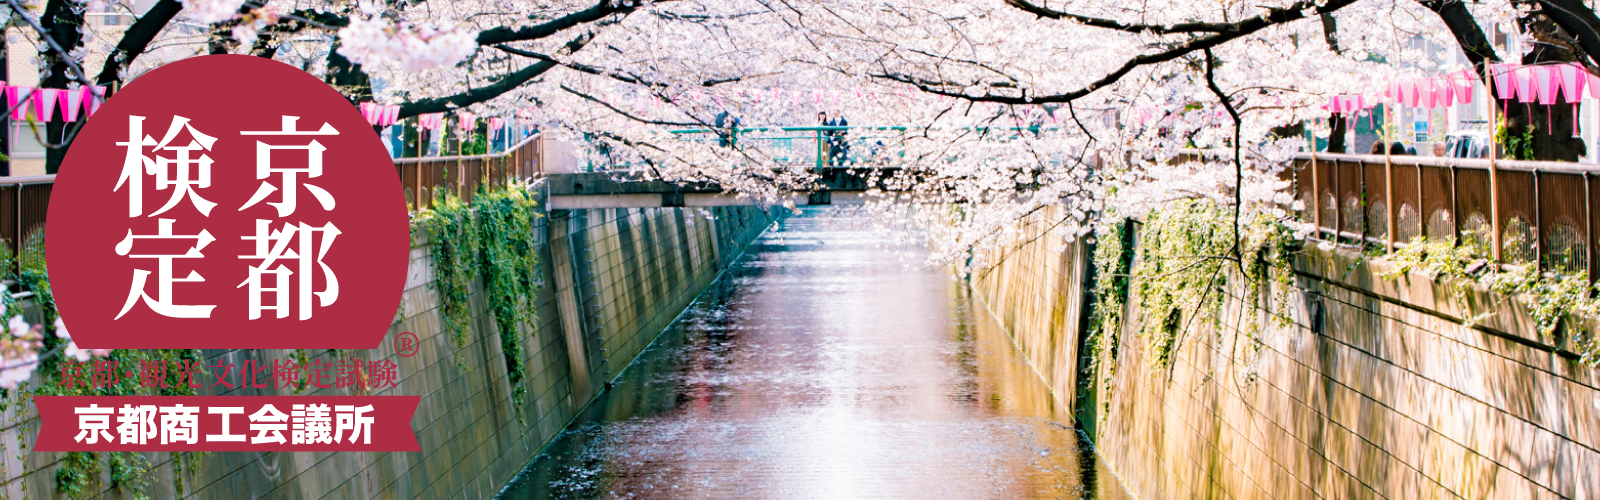 京都を知る。もっと好きになる。京都検定対策を兼ねての街歩き。検定に関係ない人もご一緒に。